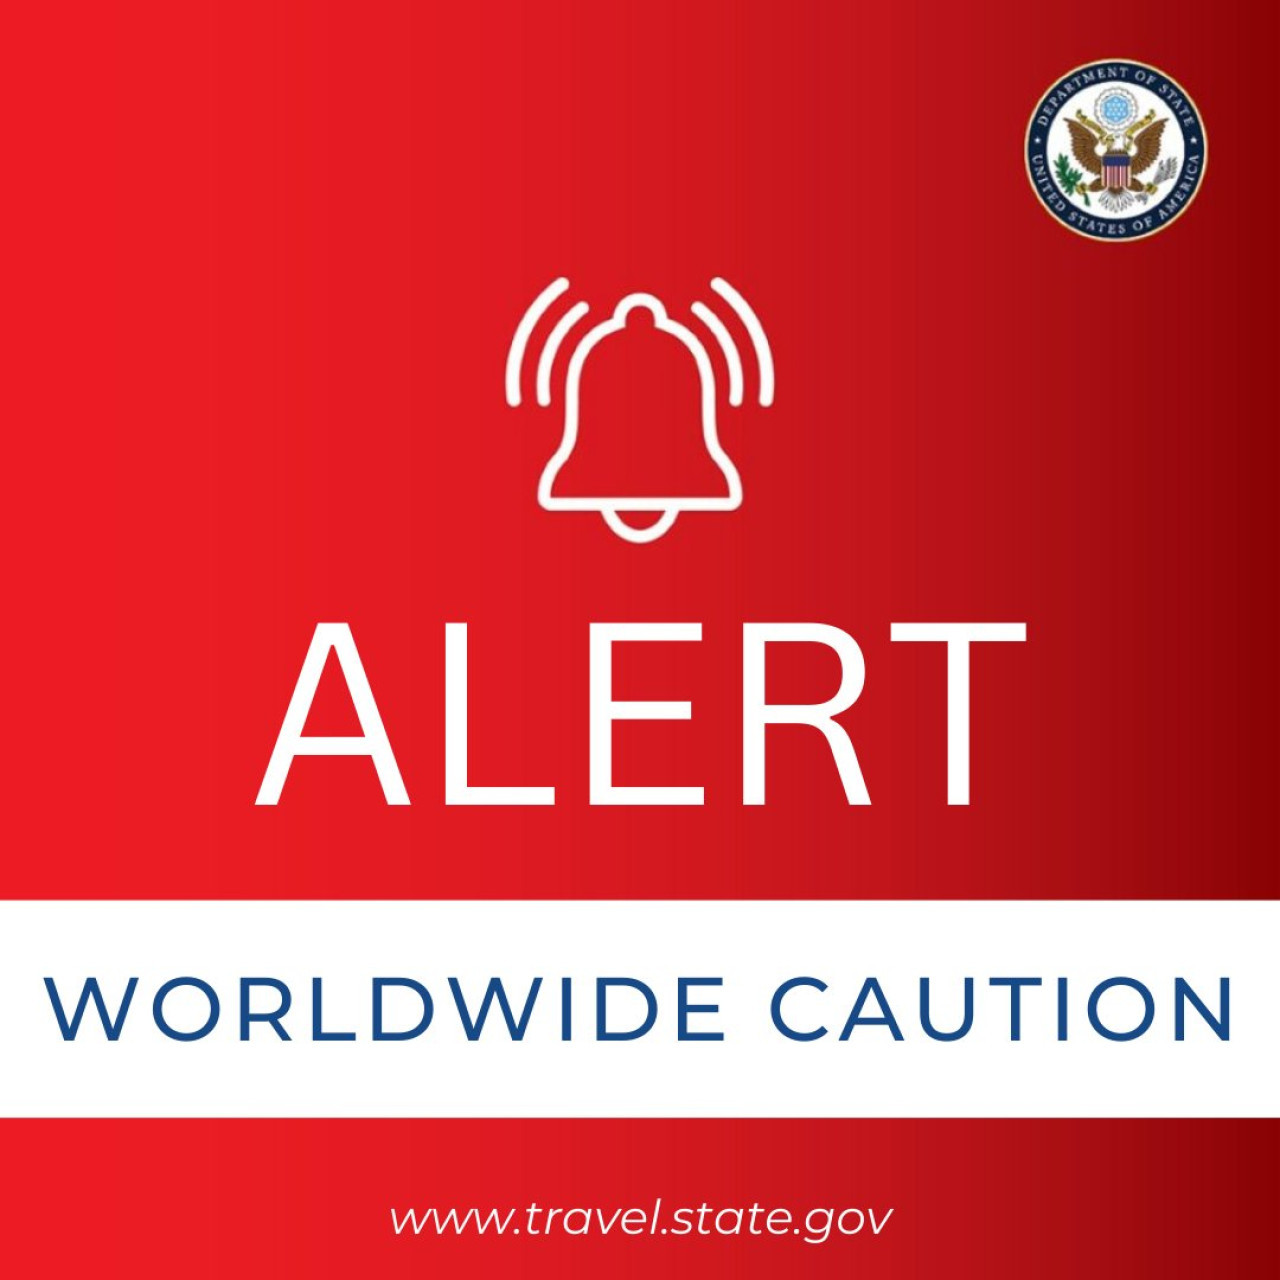 La "Alerta de Seguridad de Precaución Mundial" que emitió Estados Unidos. Foto: Departamento de Estado de EE.UU.